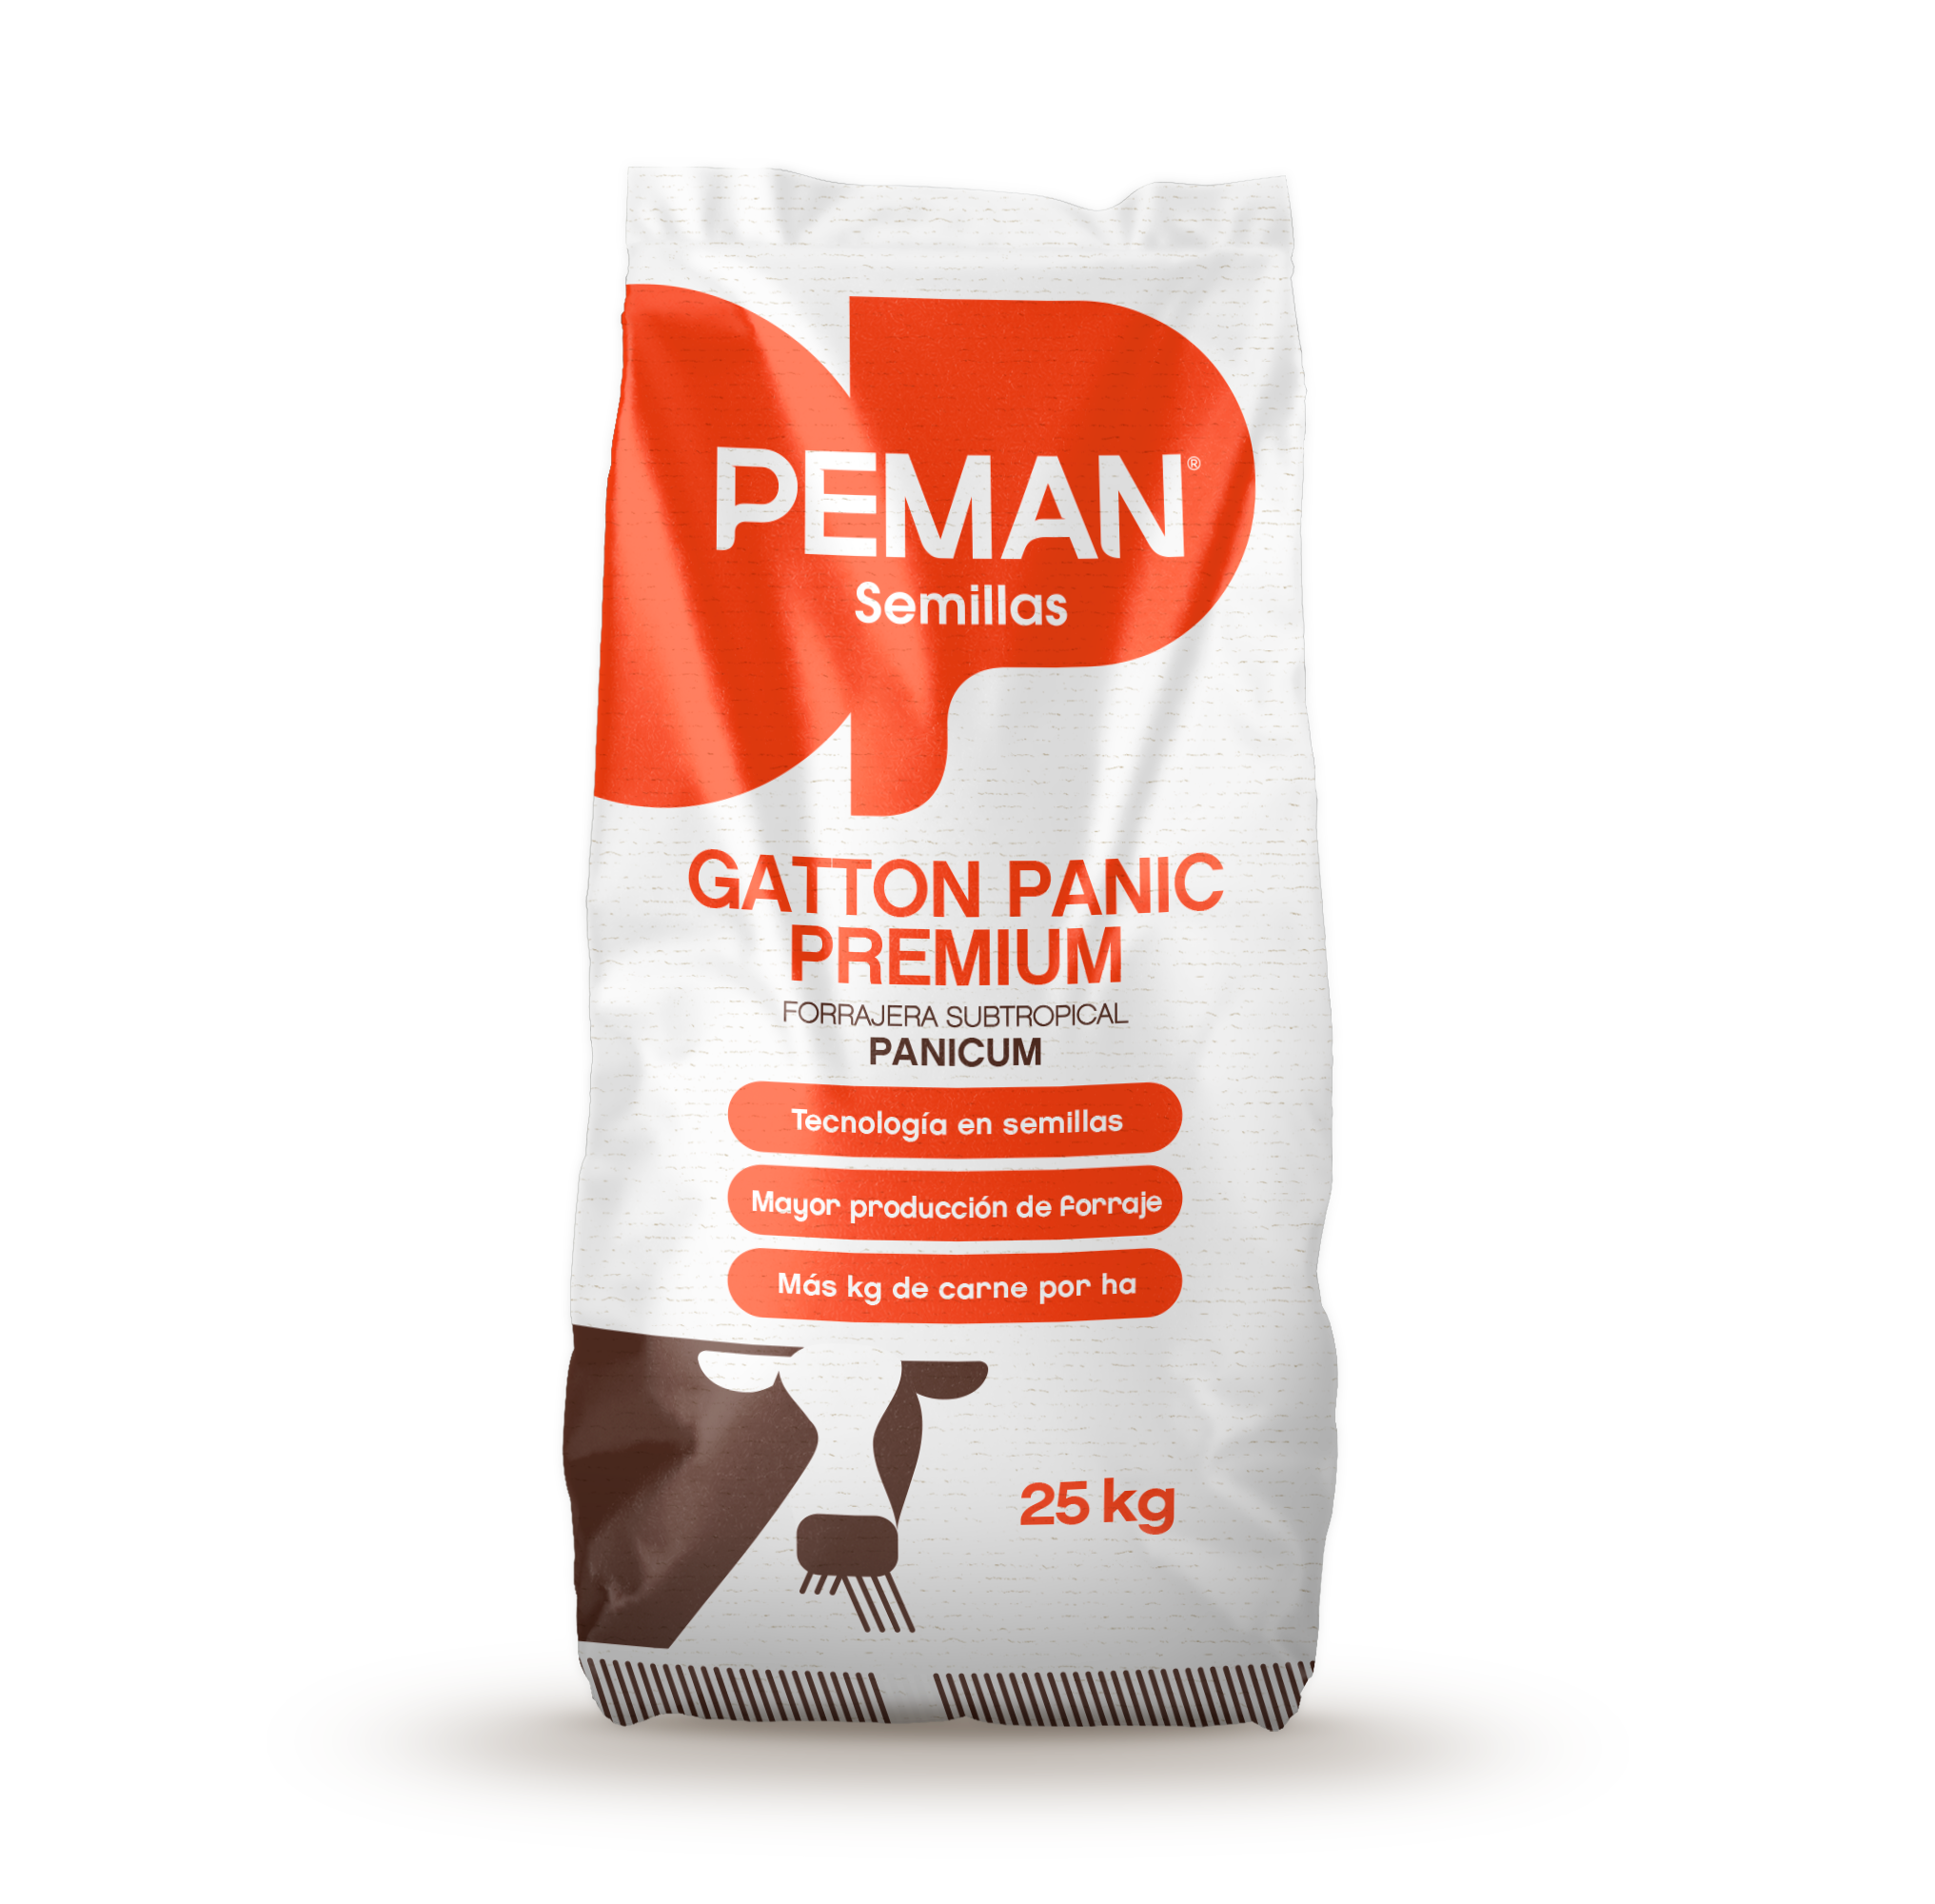 Gatton Panic Premium Panicum Maximum